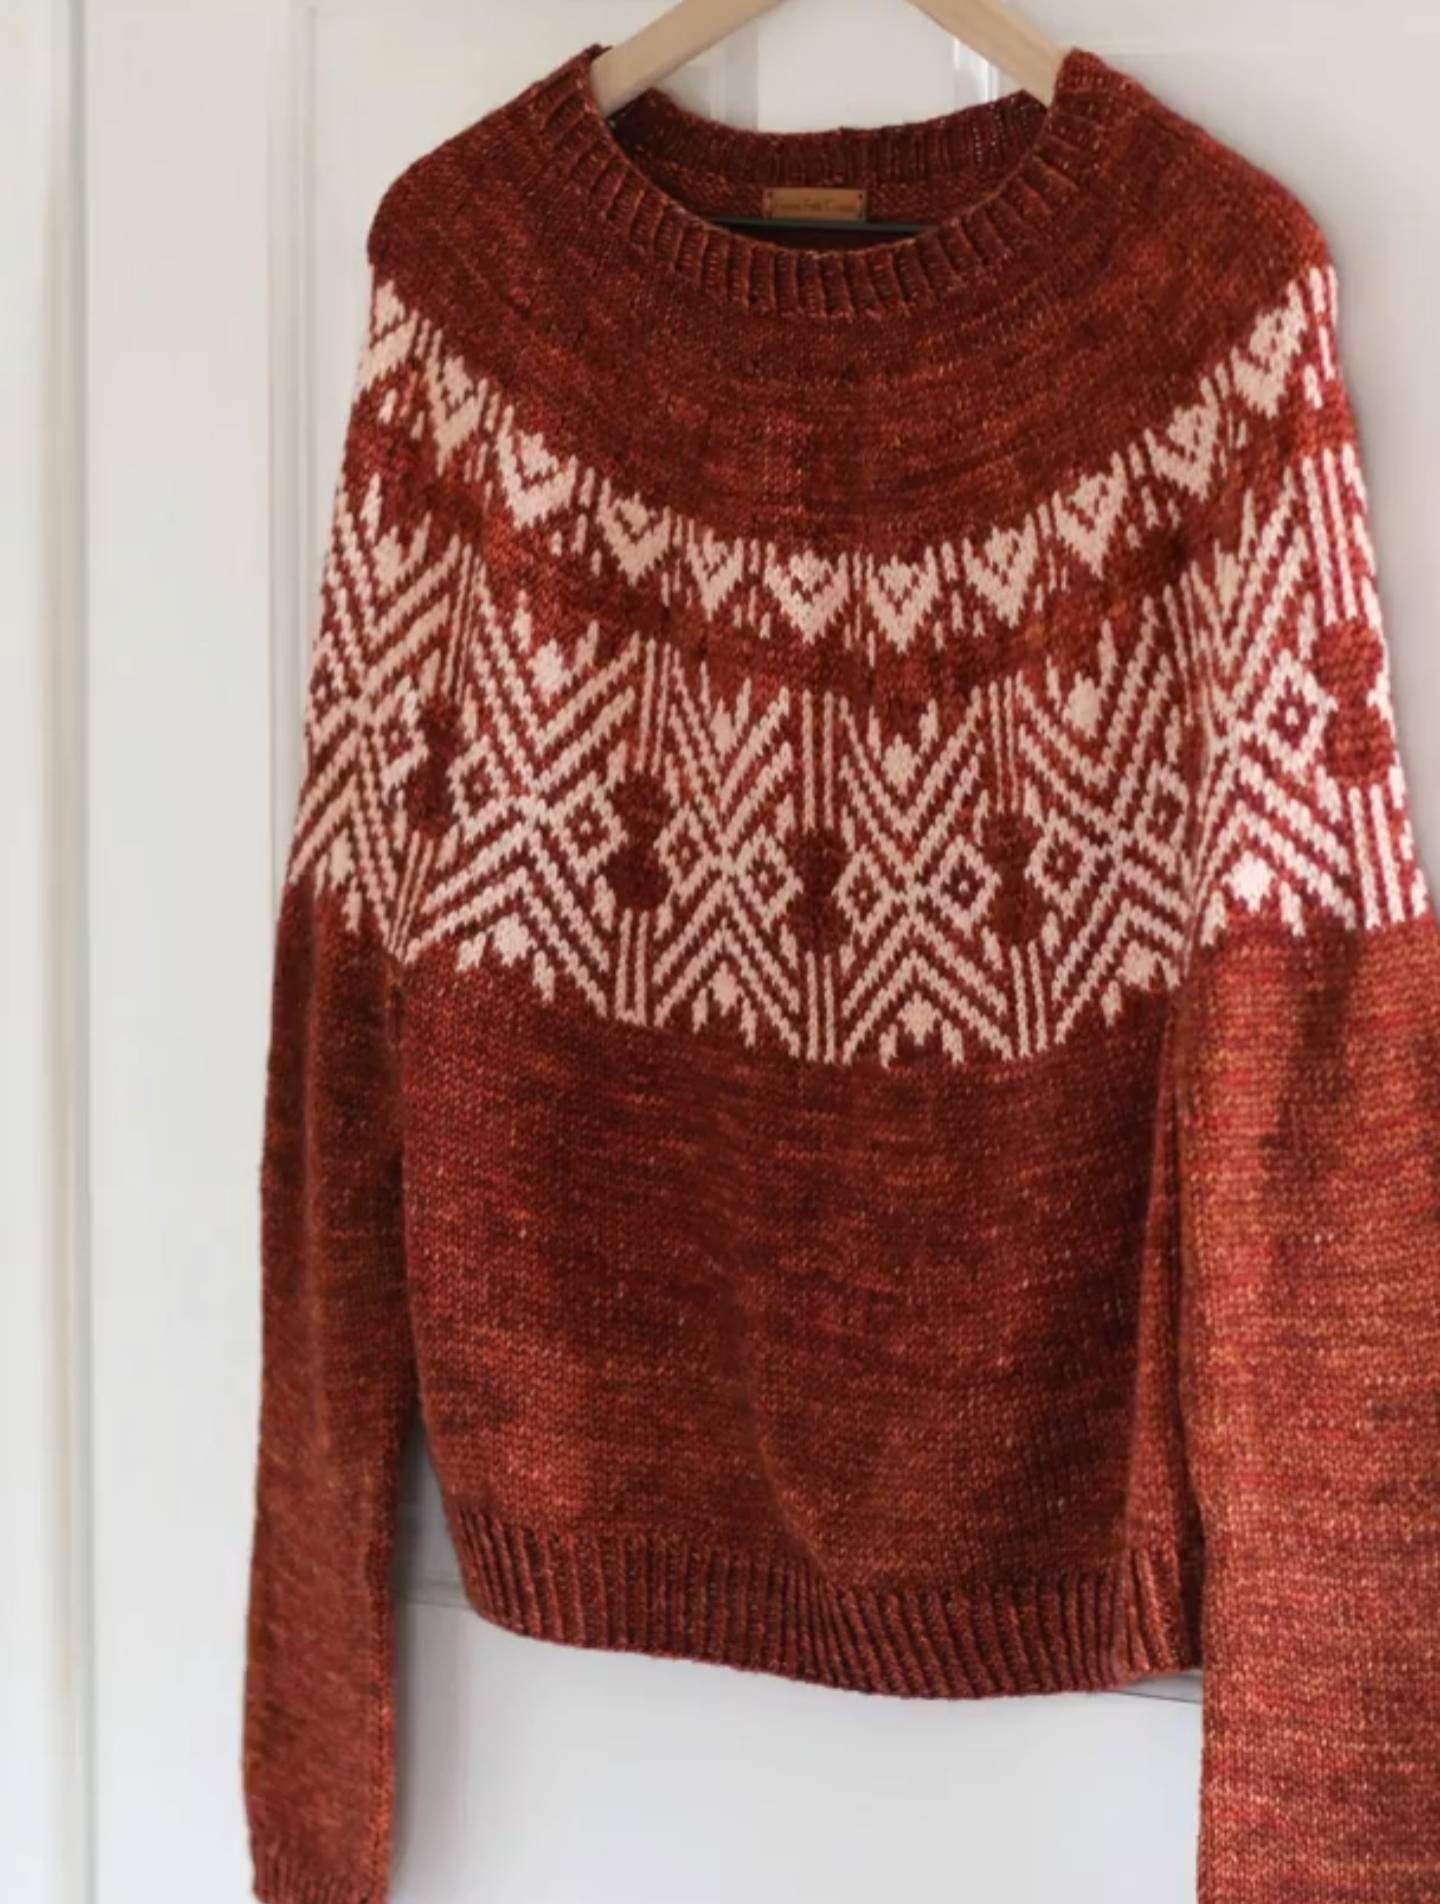 Cedar Brook Pullover Knitting Pattern PDF - Etsy